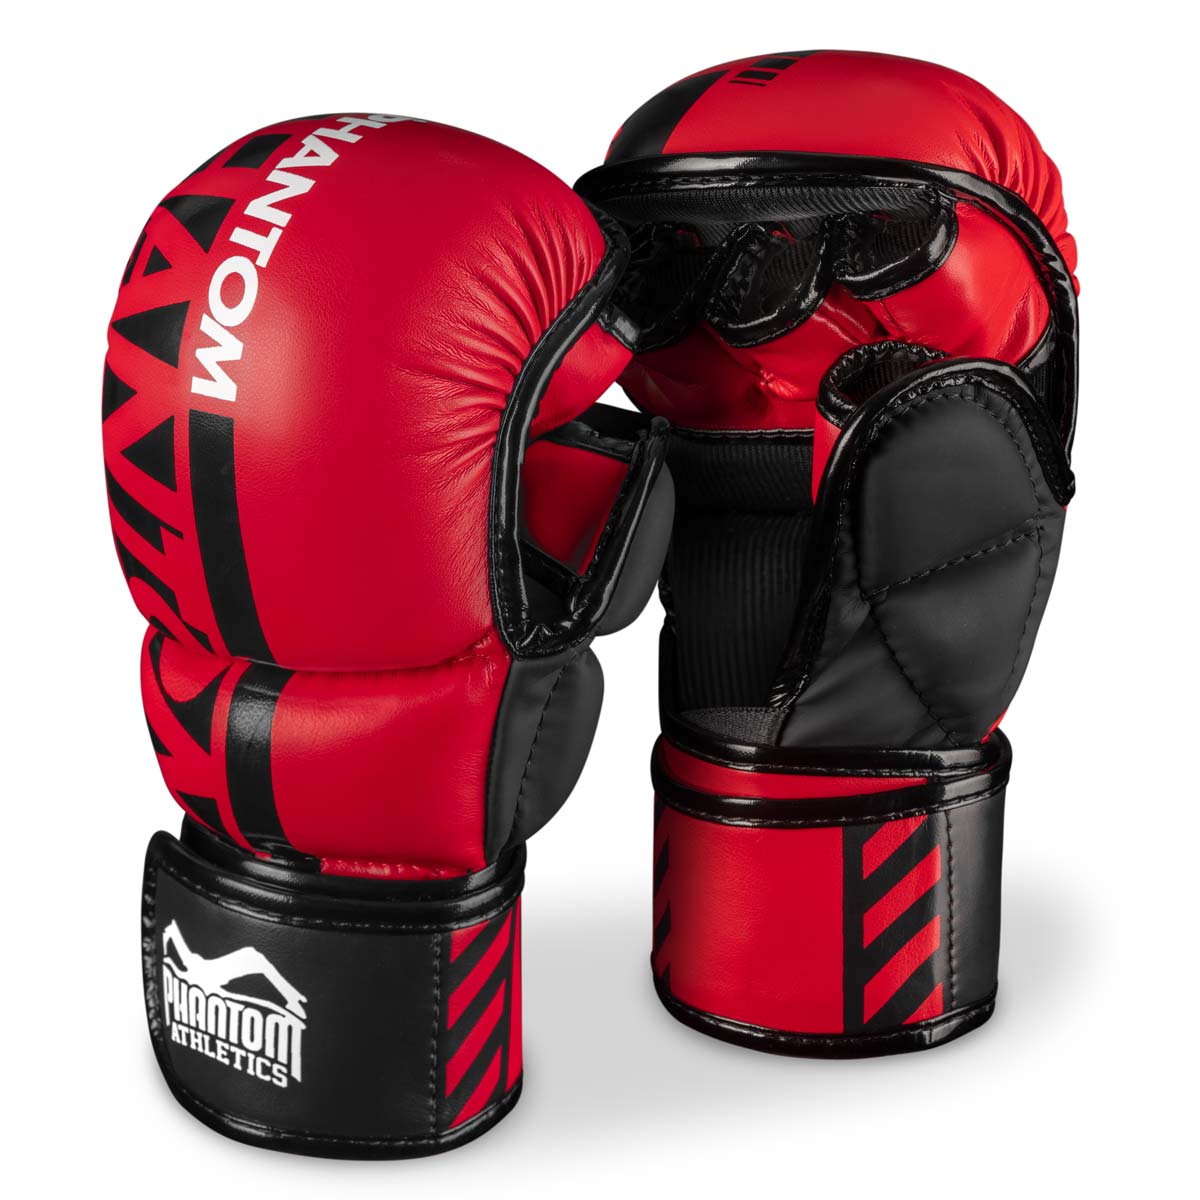 Phantom MMA sparing rukavice. Najsigurnija rukavica za vaš trening borilačkih vještina. Sada u ograničenoj crvenoj boji.